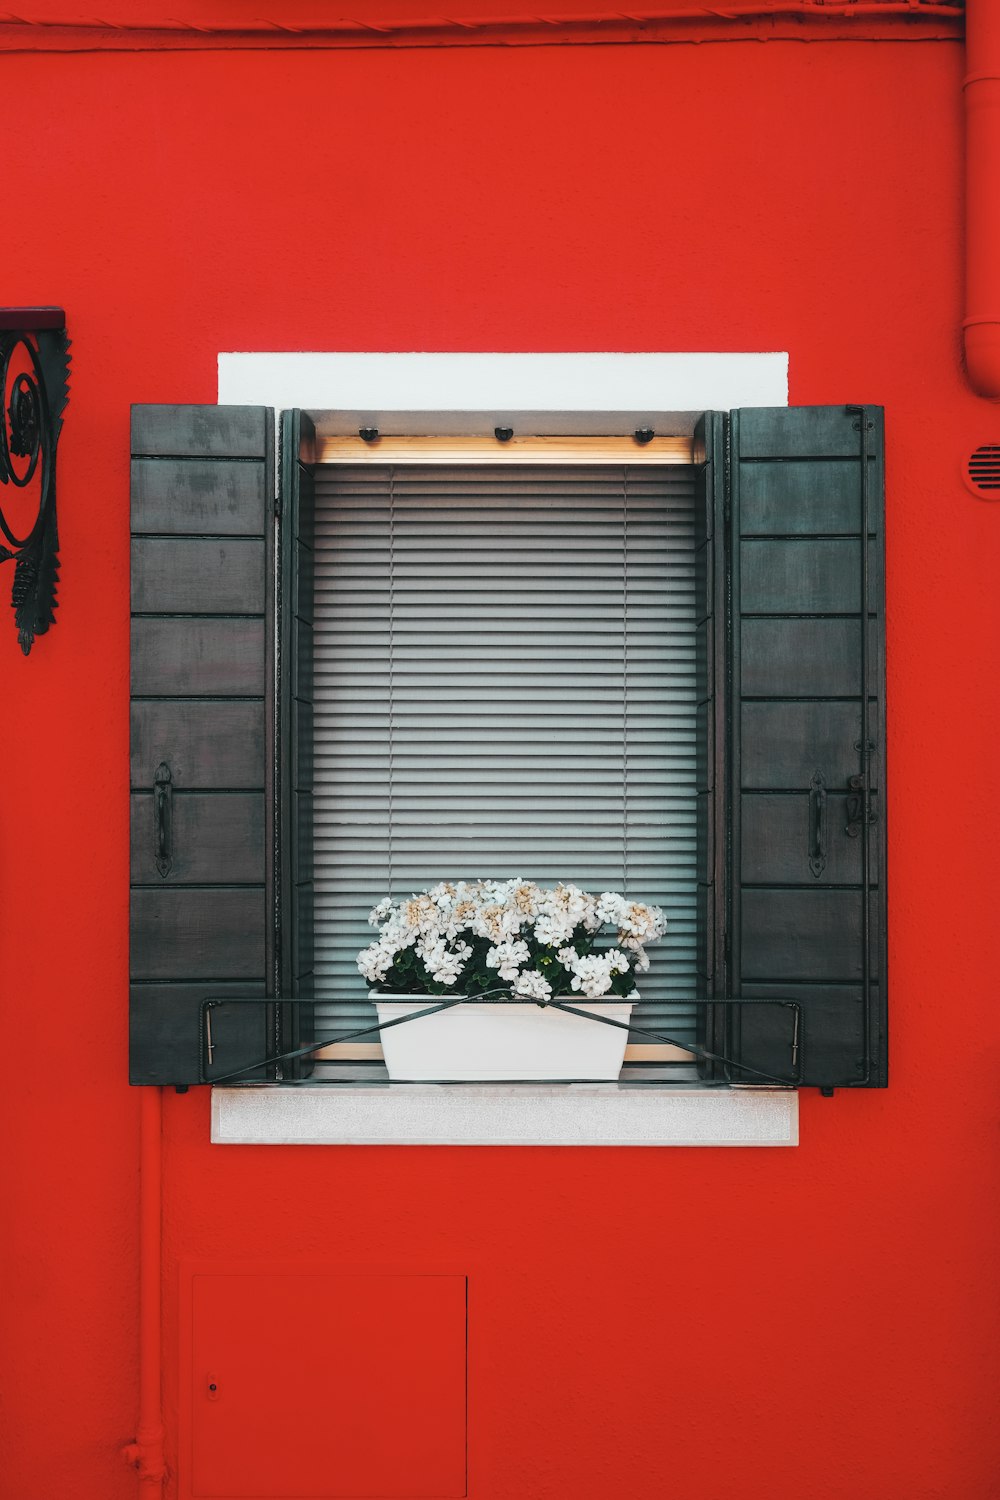 Telaio della finestra in legno nero con fiori bianchi e rossi